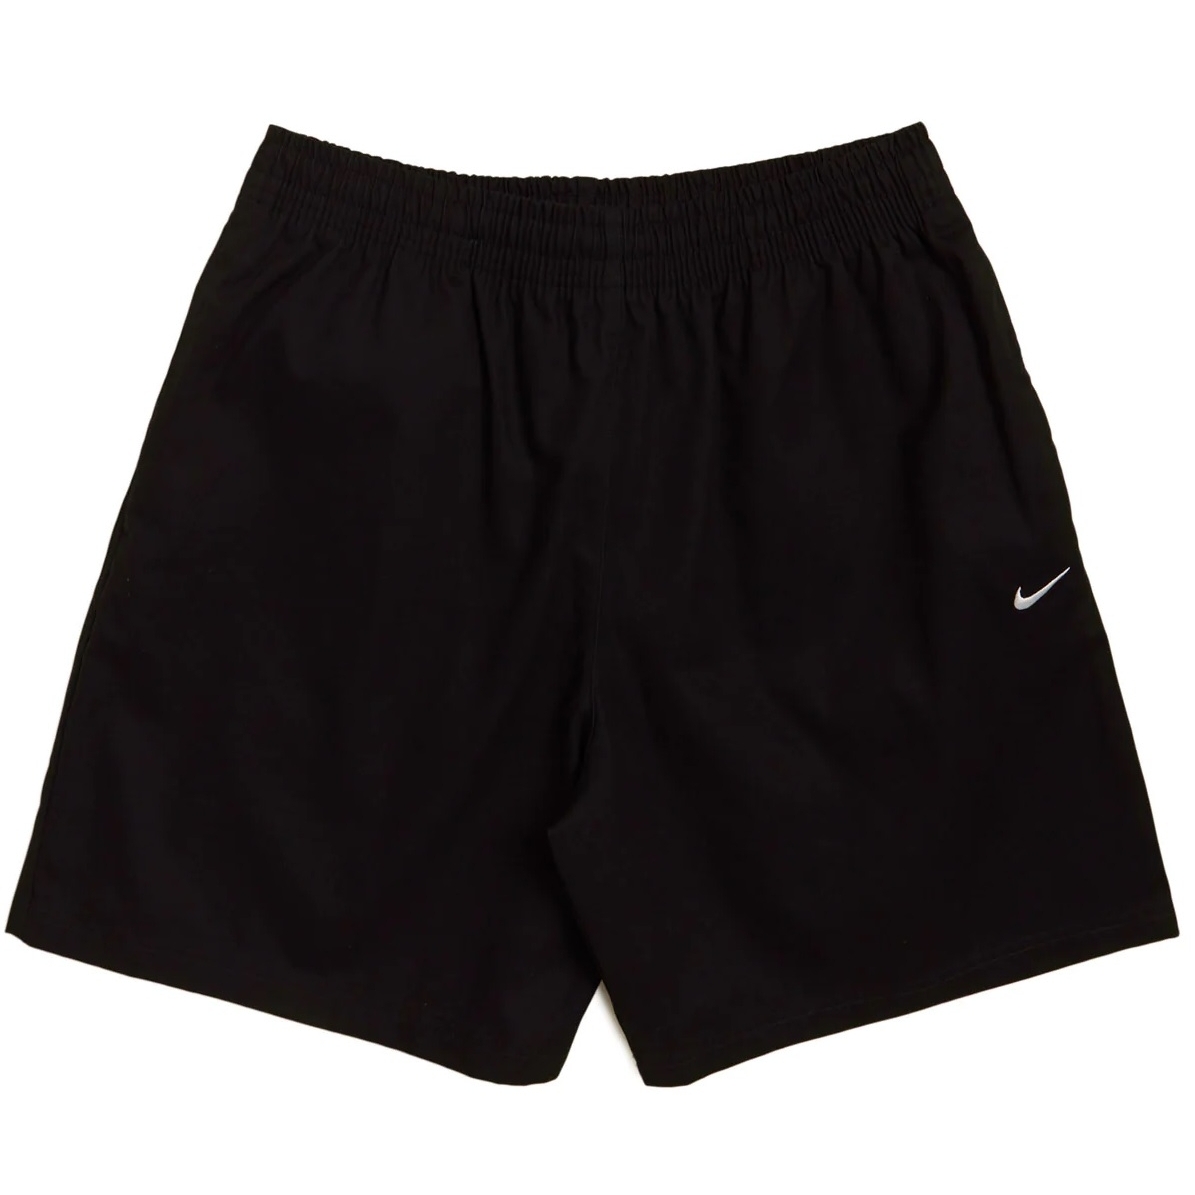 Shorts Nike Repeat Black for Men - FJ5319-010 | EKINSPORT